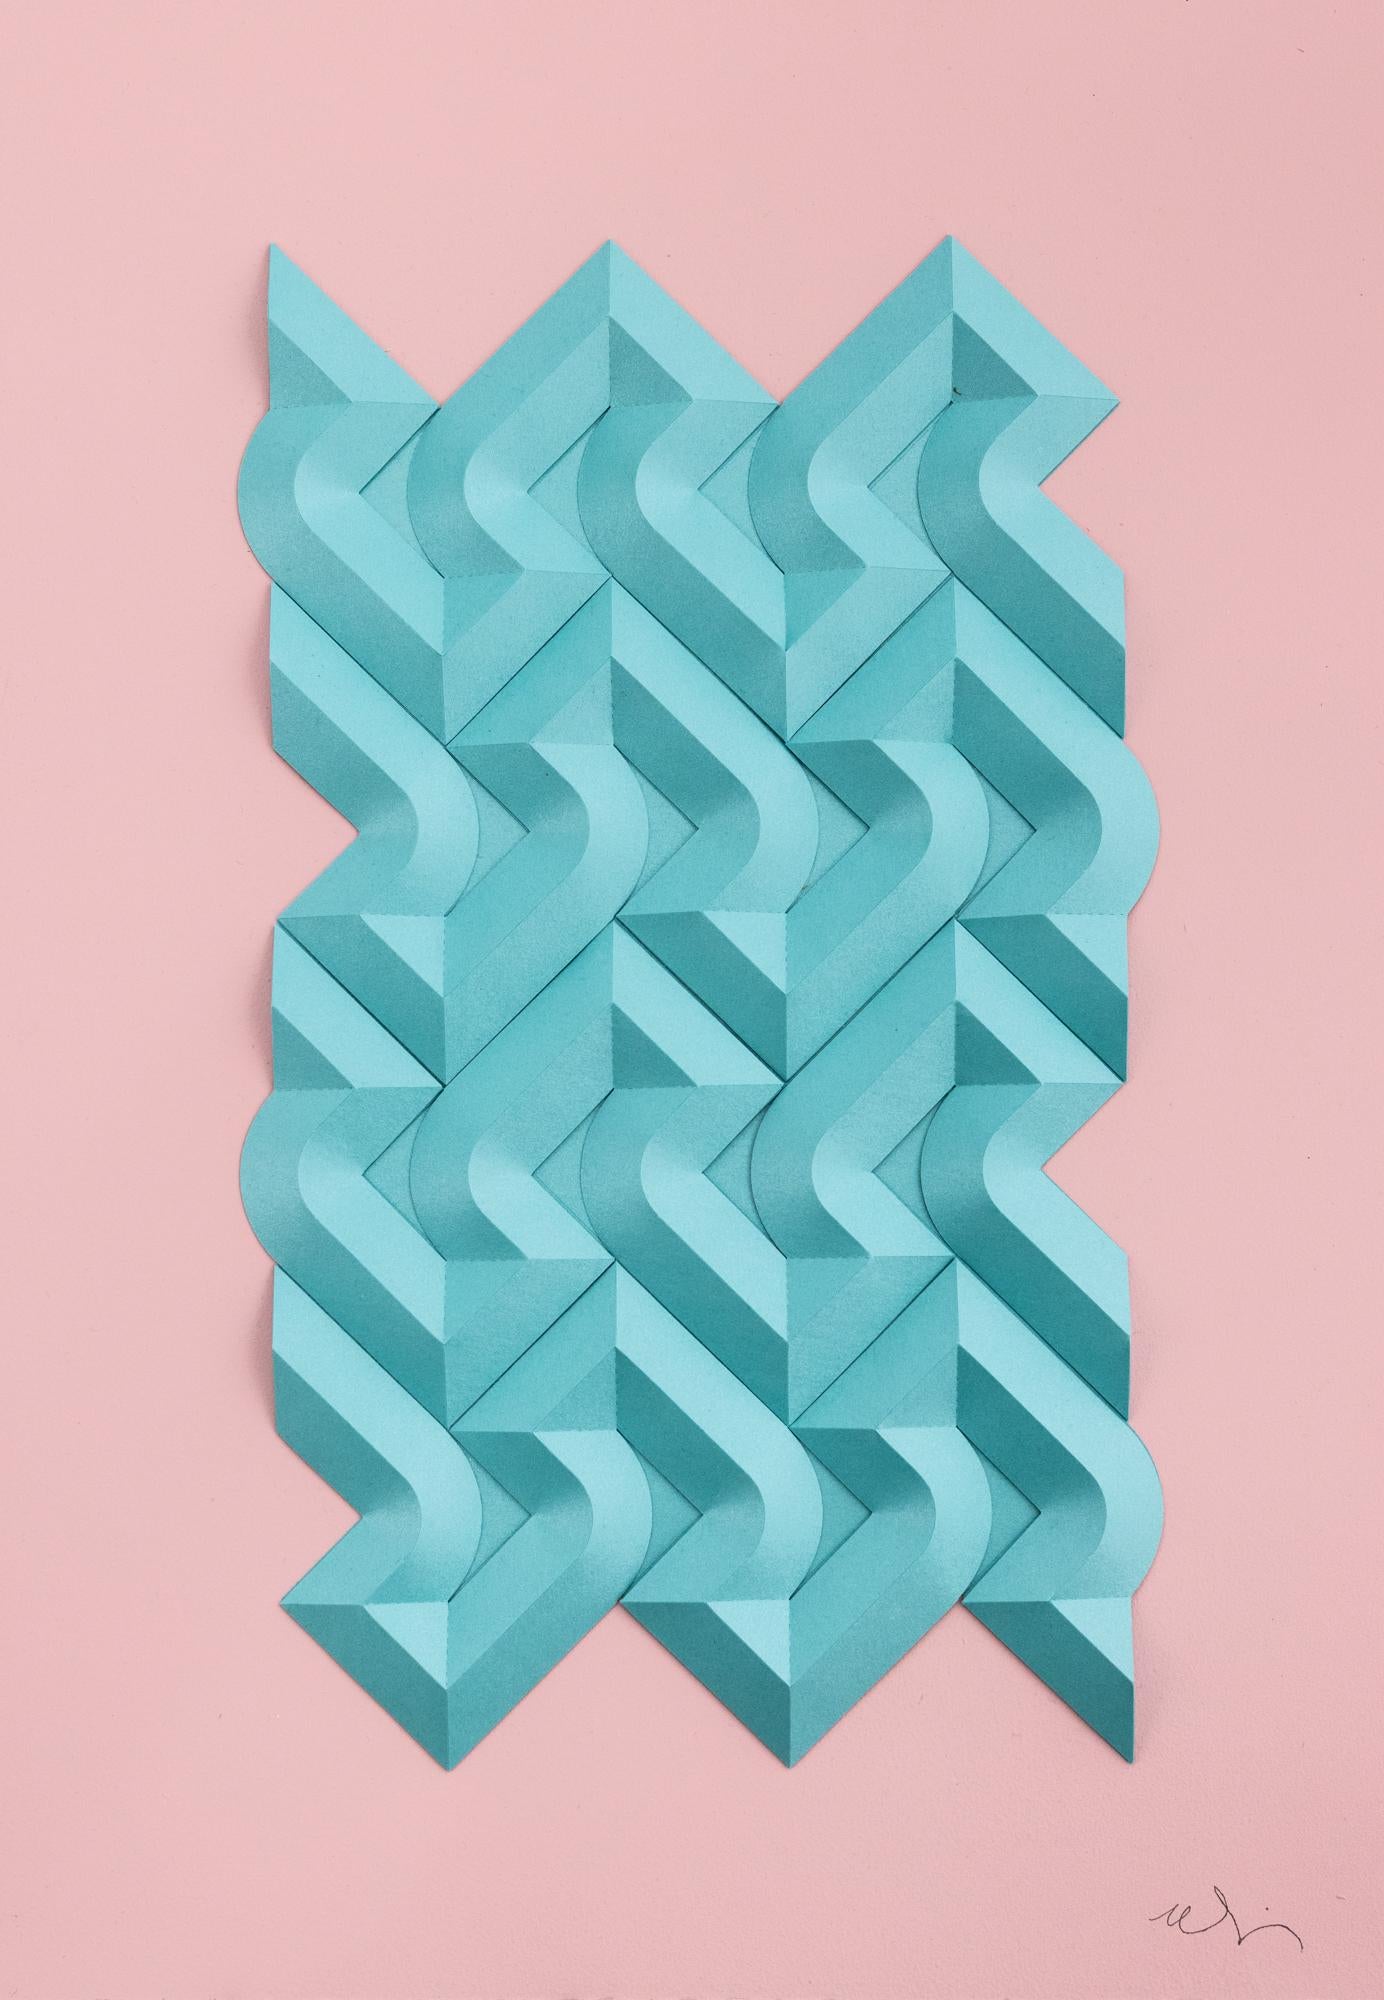 „S&S&S&S&S&S&S 4 in schillerndem Aquamarin auf Rosa“, gefaltetes Papier, abstrakte Muster – Art von Matt Shlian